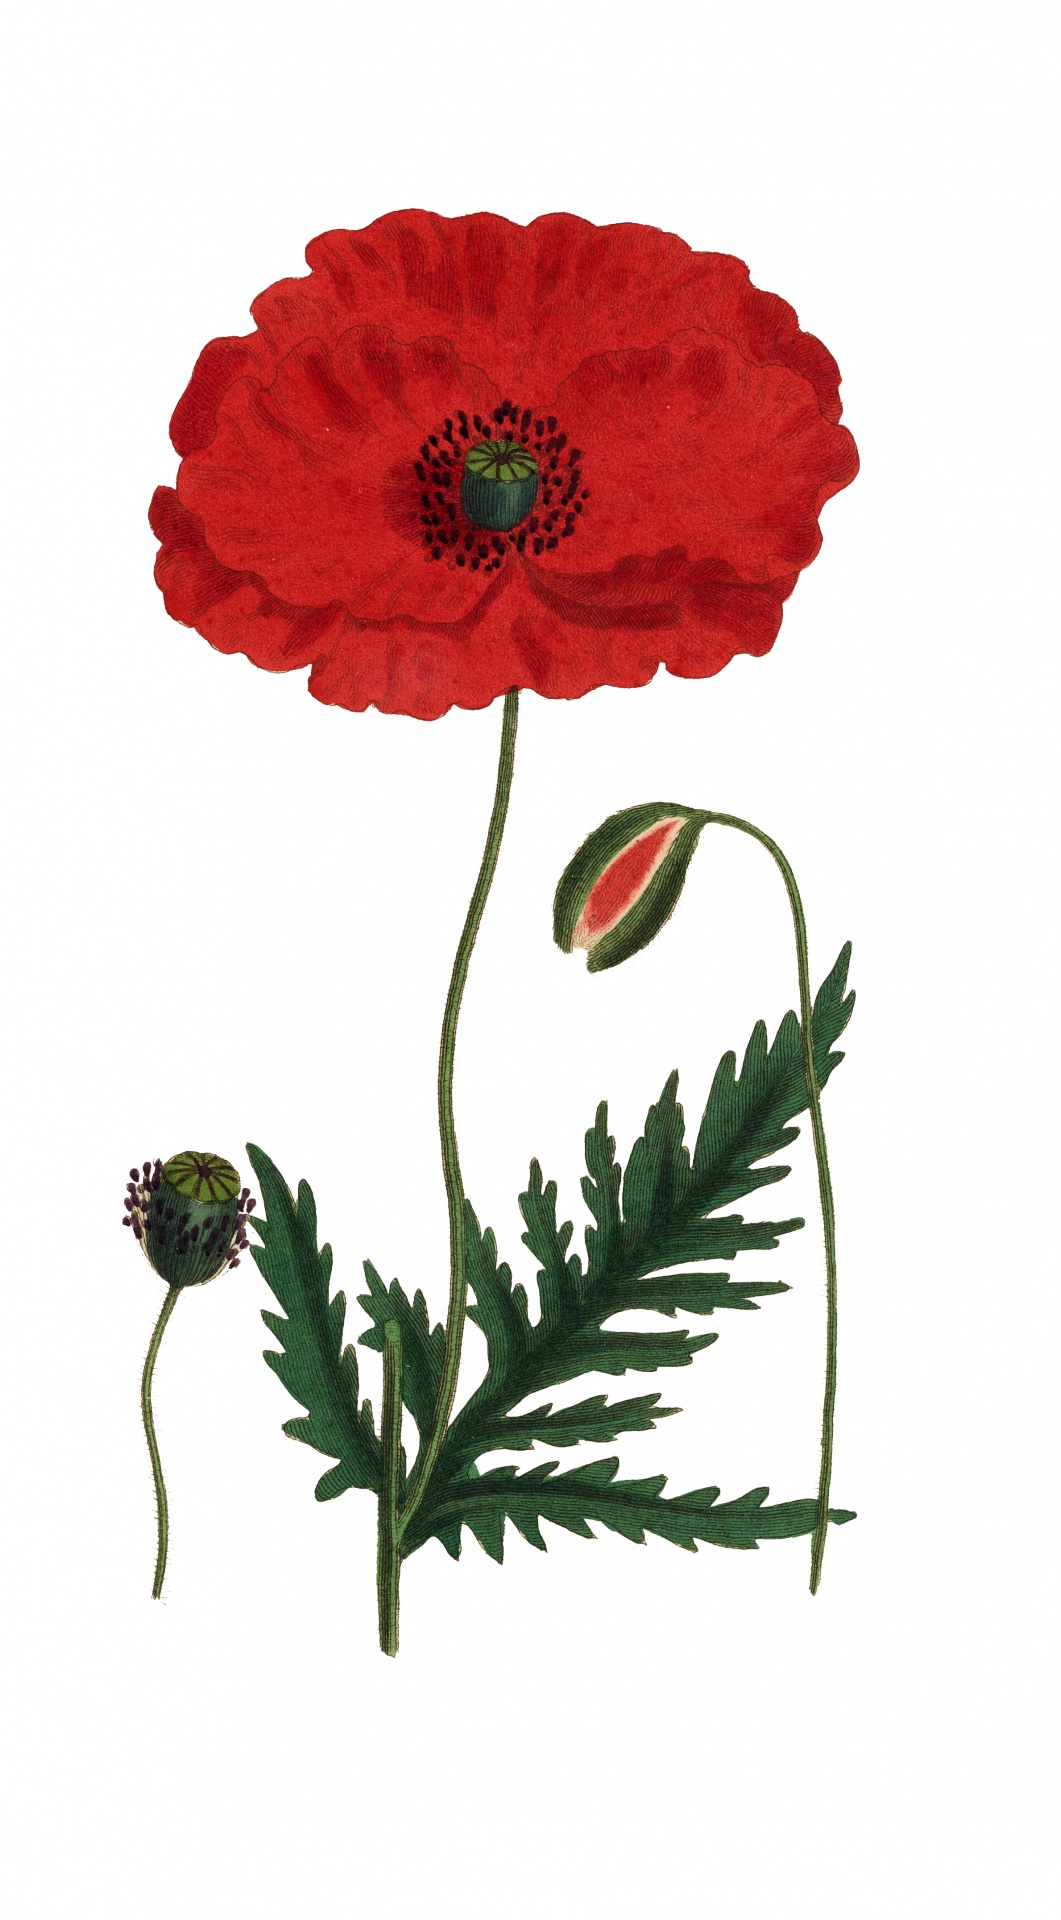 Vintage Red Poppy Illustration